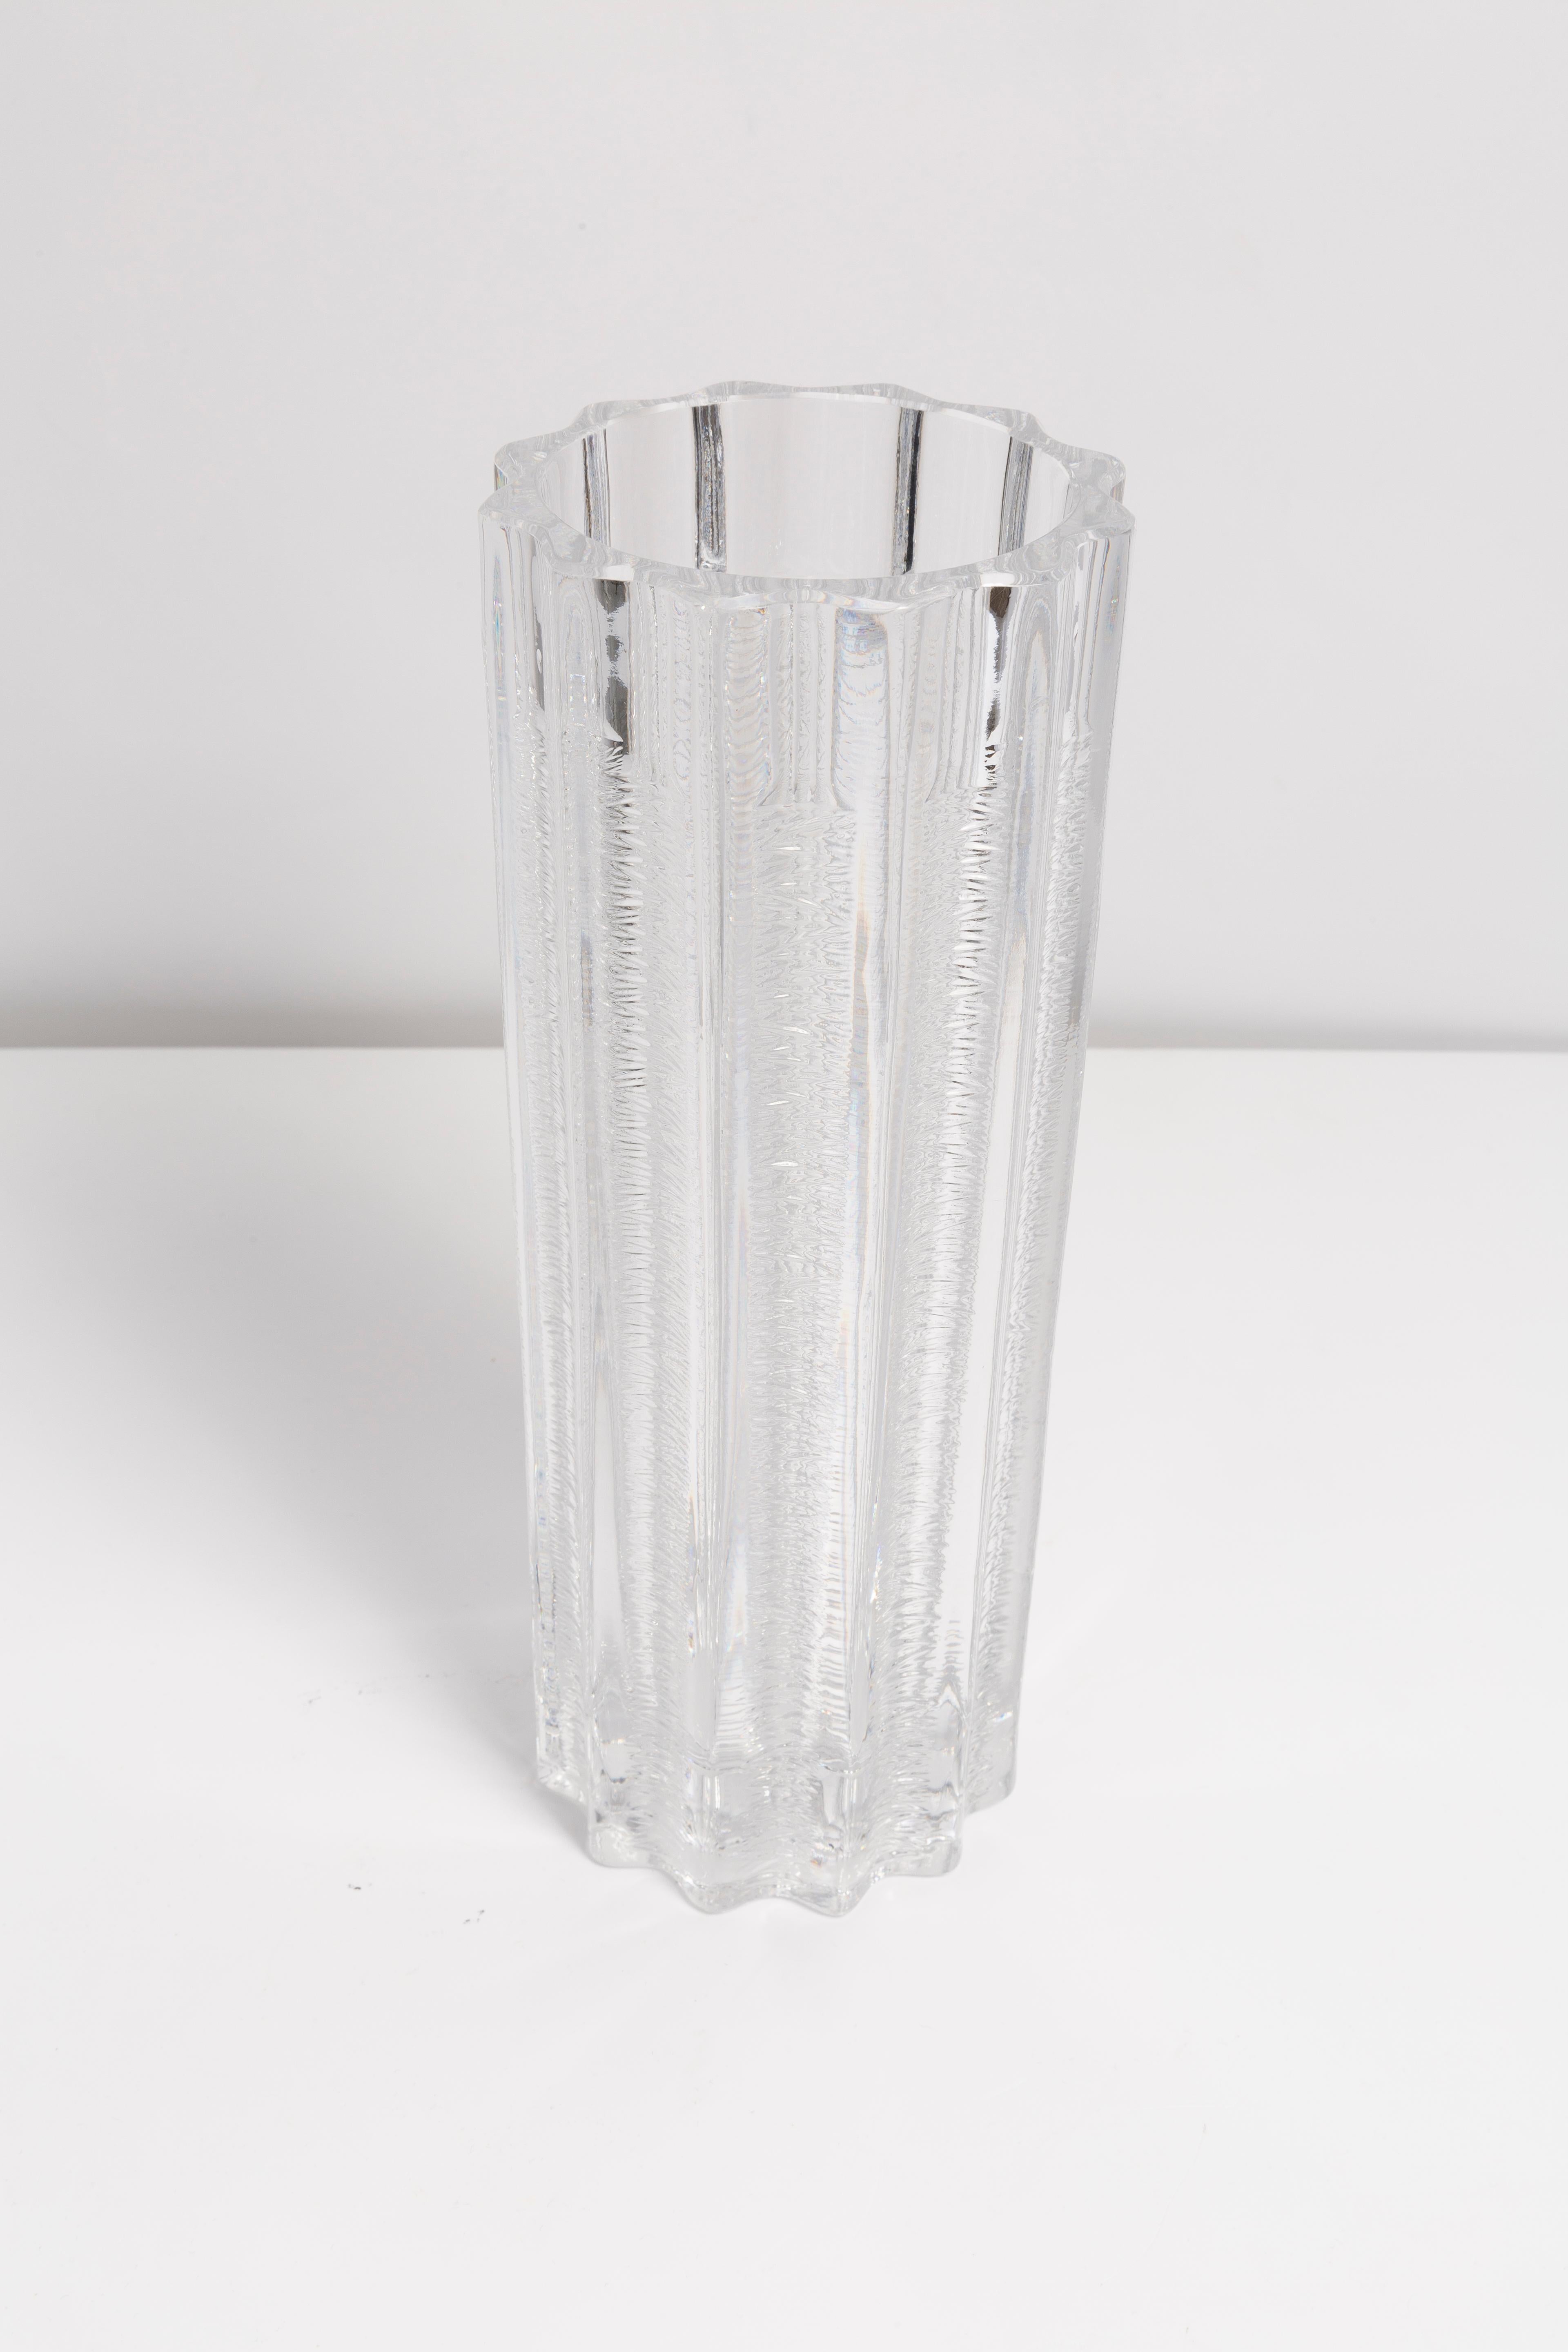 Vase transparent en très bon état. Produit dans les années 1960.
Verre en parfait état. Le vase semble avoir été sorti de sa boîte.

Pas d'accrocs, de défauts, etc. La surface extérieure en relief, l'intérieur lisse. 
Vase en verre épais,